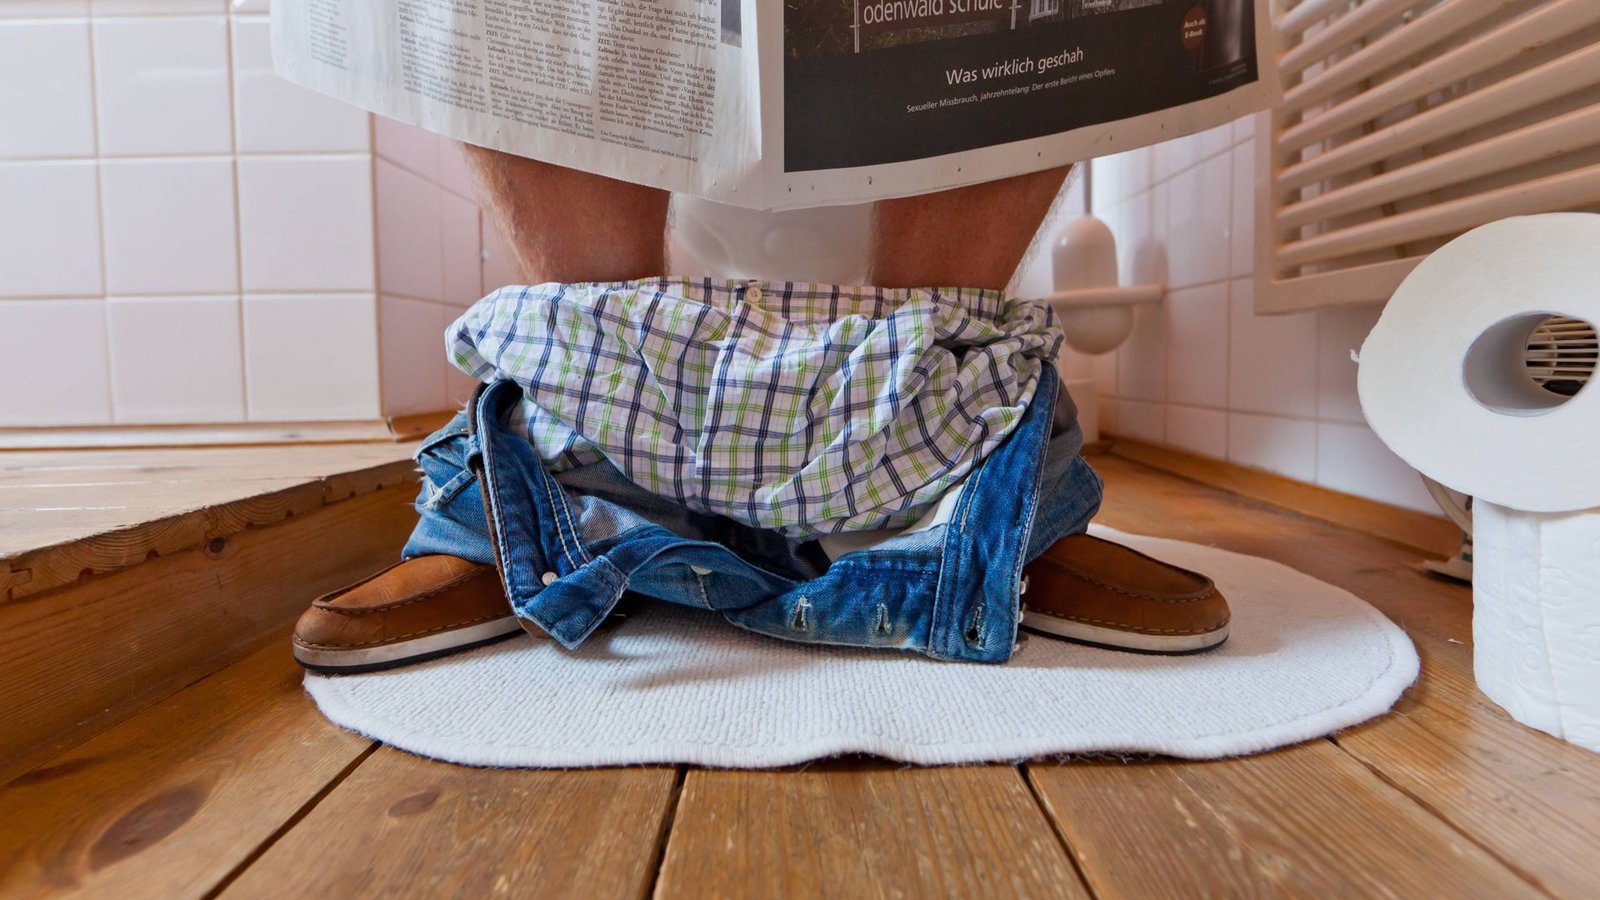 Jugendliche und junge Männer tragen am häufigsten schmutzige Unterhosen (Symbolbild).Foto: imago stock&people/imago stock&people